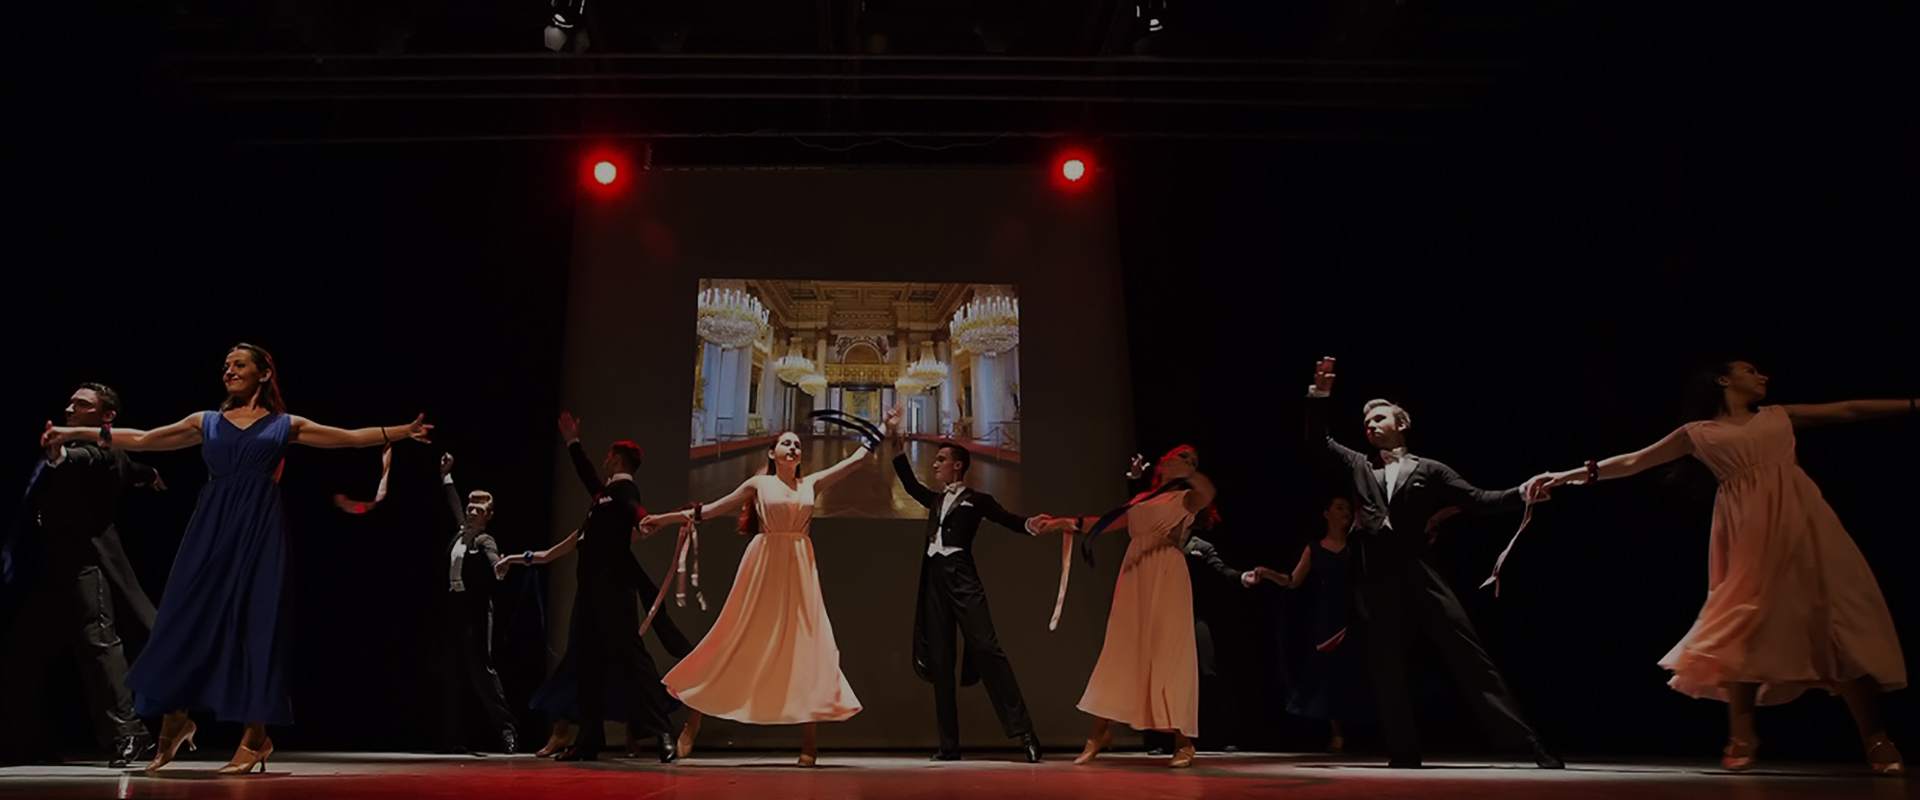 Pro Dance Studio Club Dans Sportiv Brasov | Cursuri de dans Brasov | Dansul mirilor Brasov | Dansuri pentru adulti Brasov